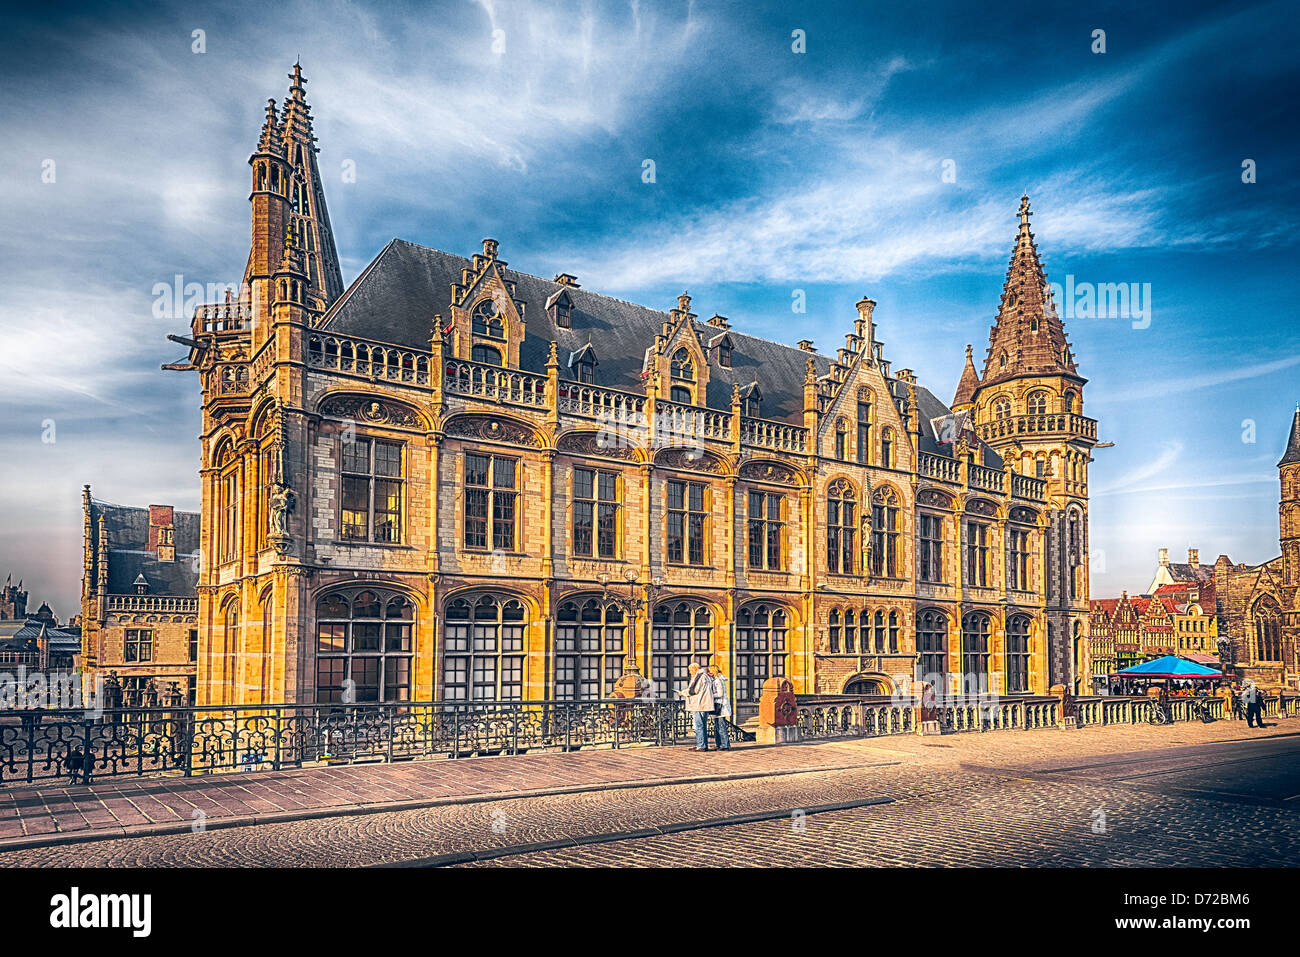 Gothic architecture in Gent, Belgium Stock Photo